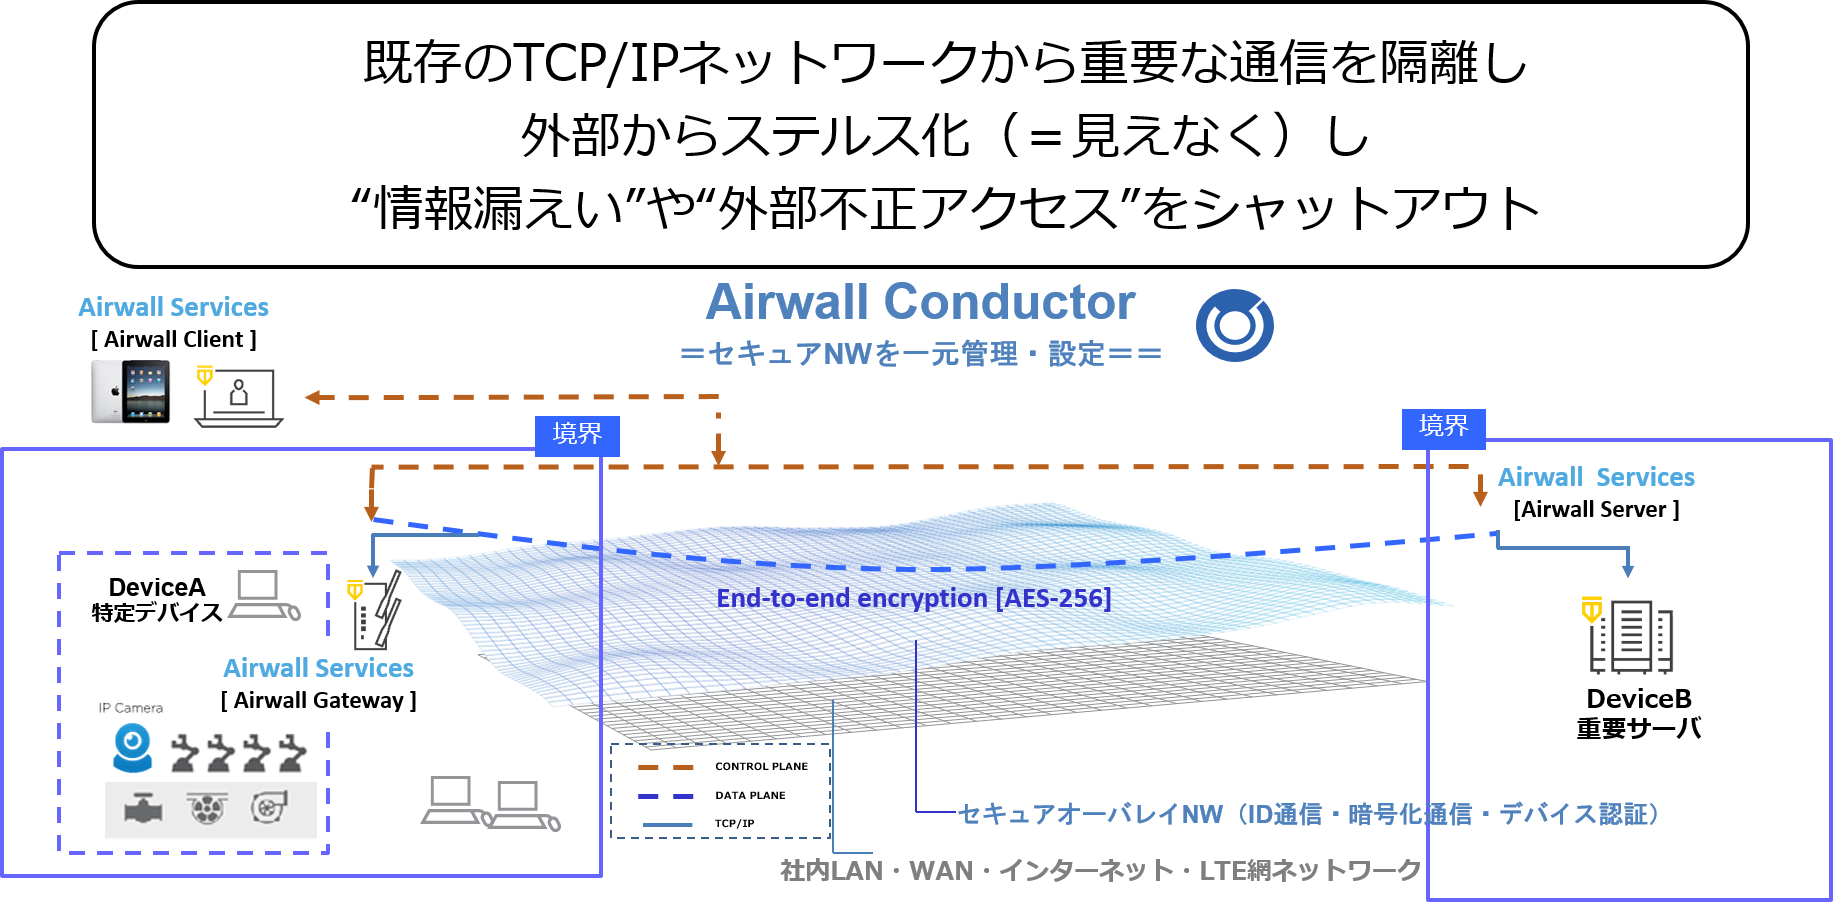 【Tempered】Airwall ConductorのGUI上での操作で既存ネットワークを変更せずに簡単にマイクロセグメンテーションNWを作成可能